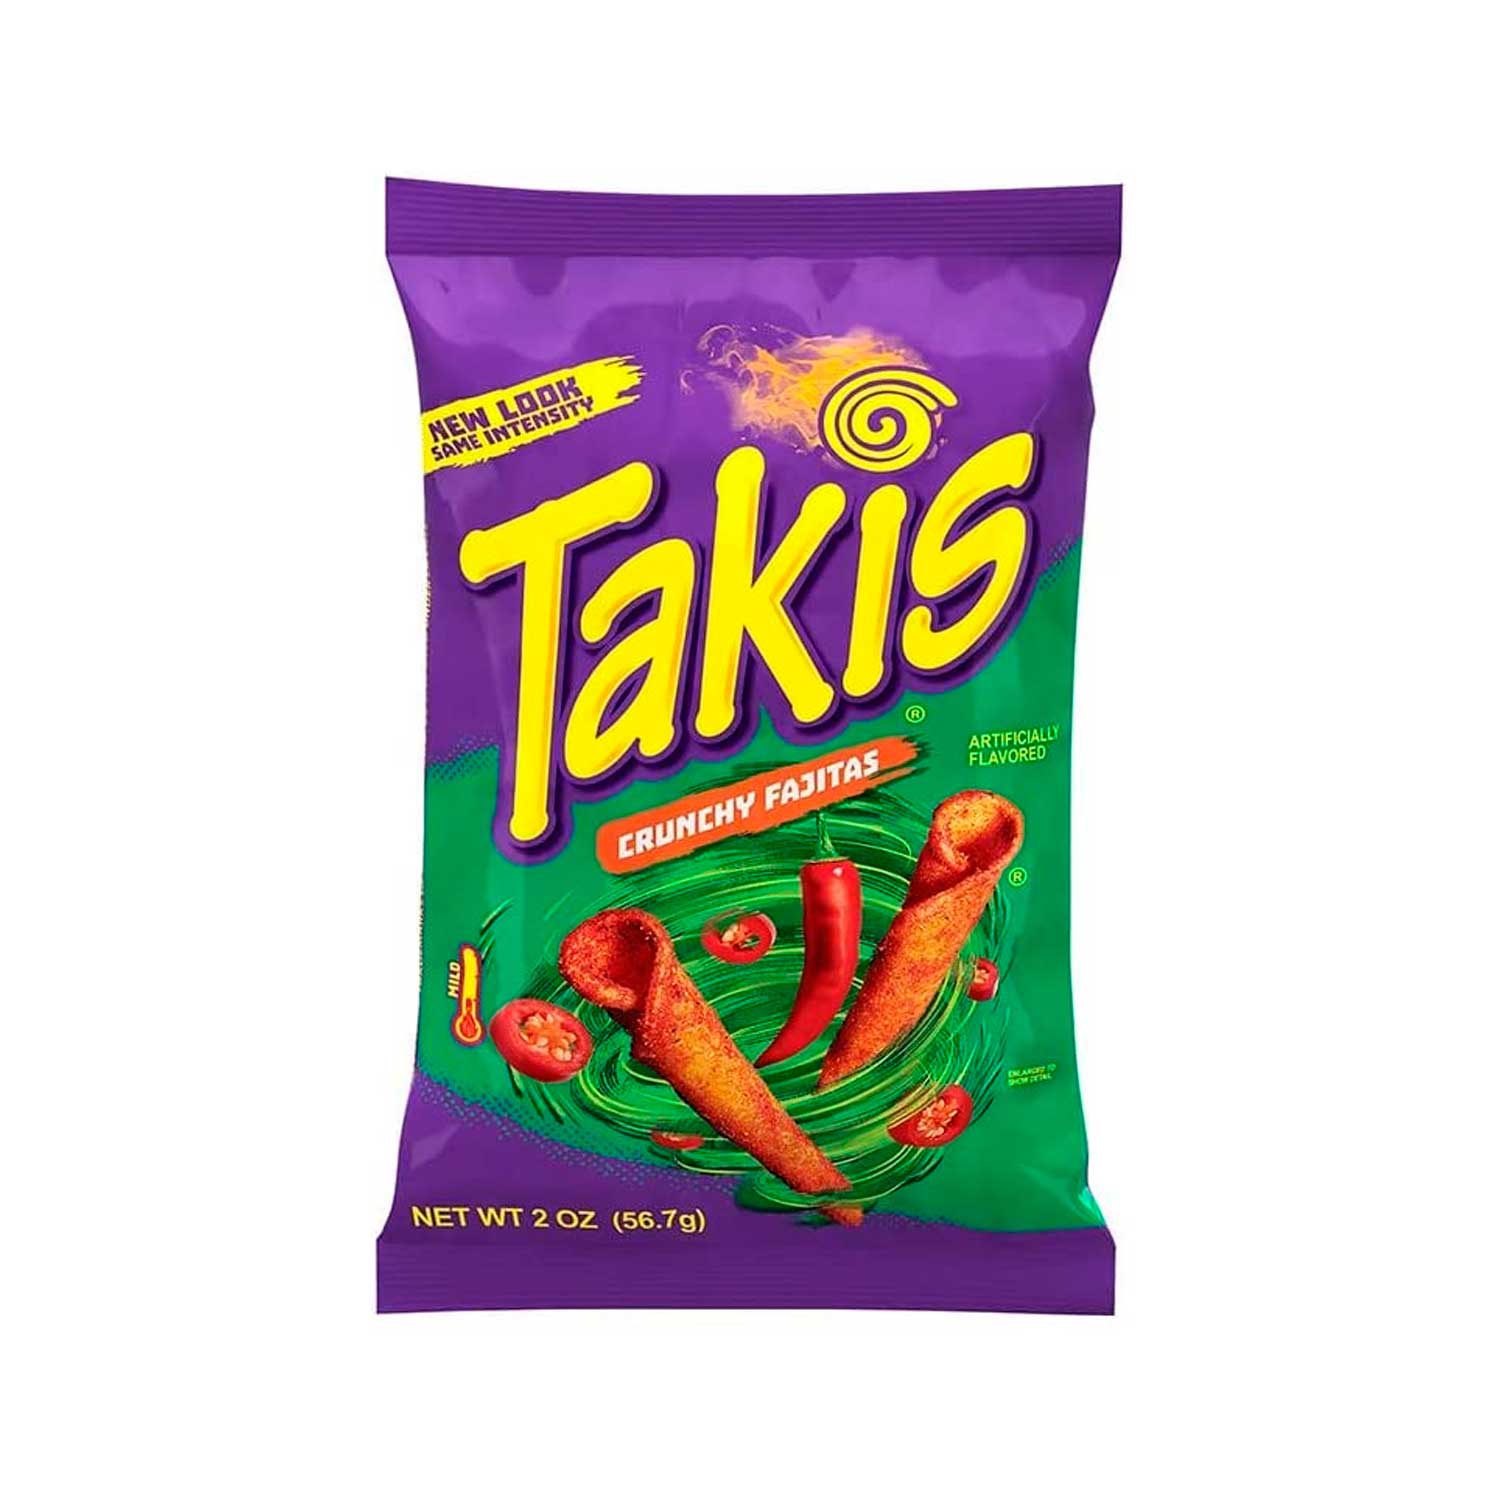 Takis Crunchy Fajita 56.7 g